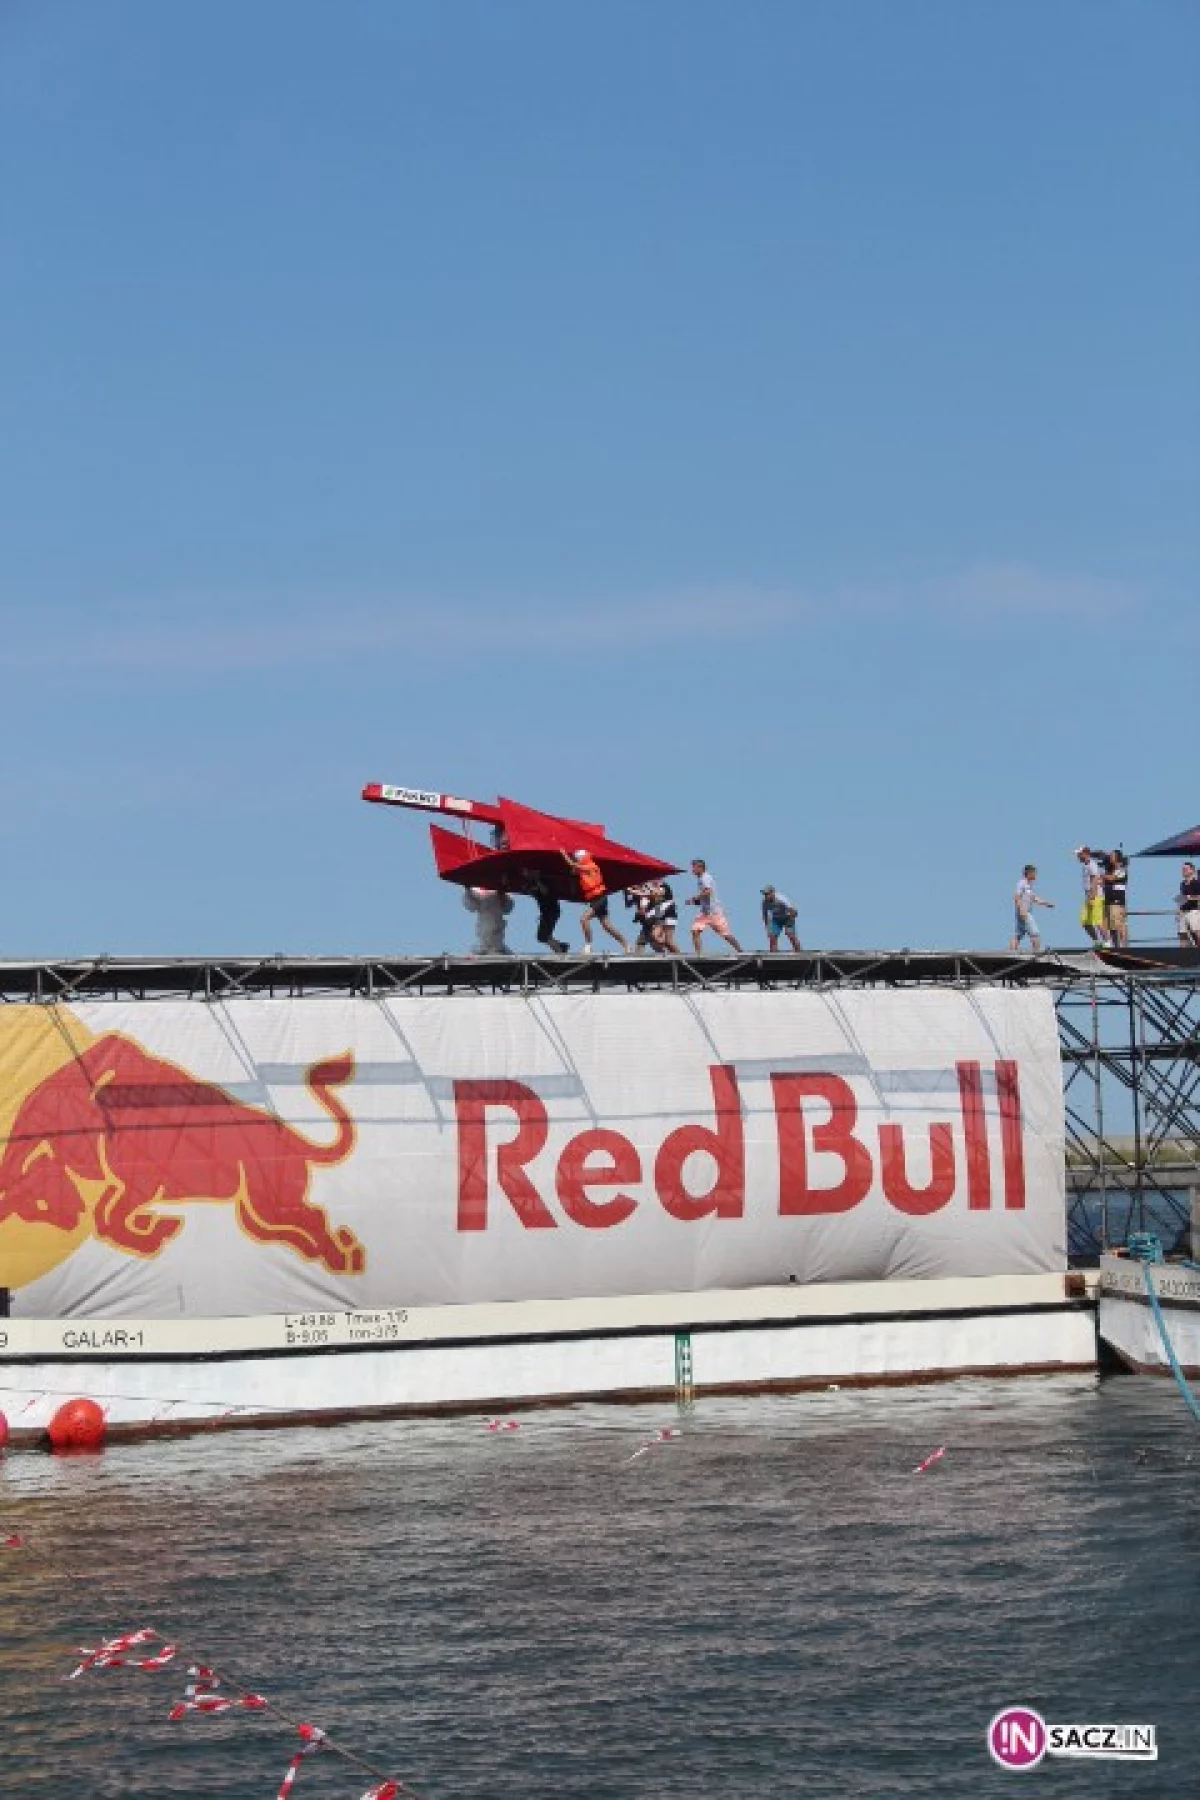 Sądecka drużyna wystartowała w lotach Red Bull